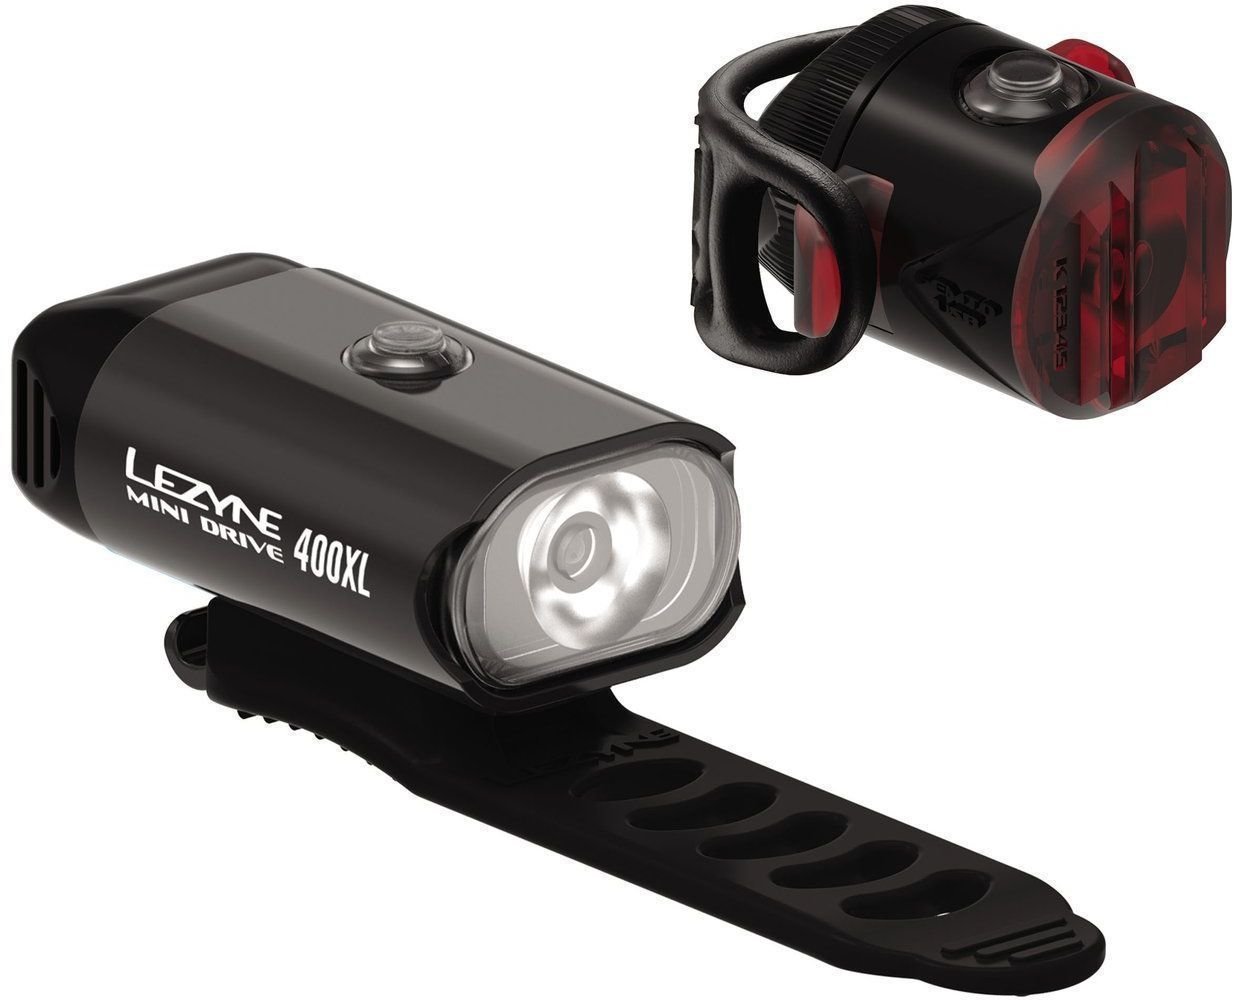 Luz para ciclismo Lezyne Mini Drive 400XL / Femto USB Drive Preto Front 400 lm / Rear 5 lm Luz para ciclismo